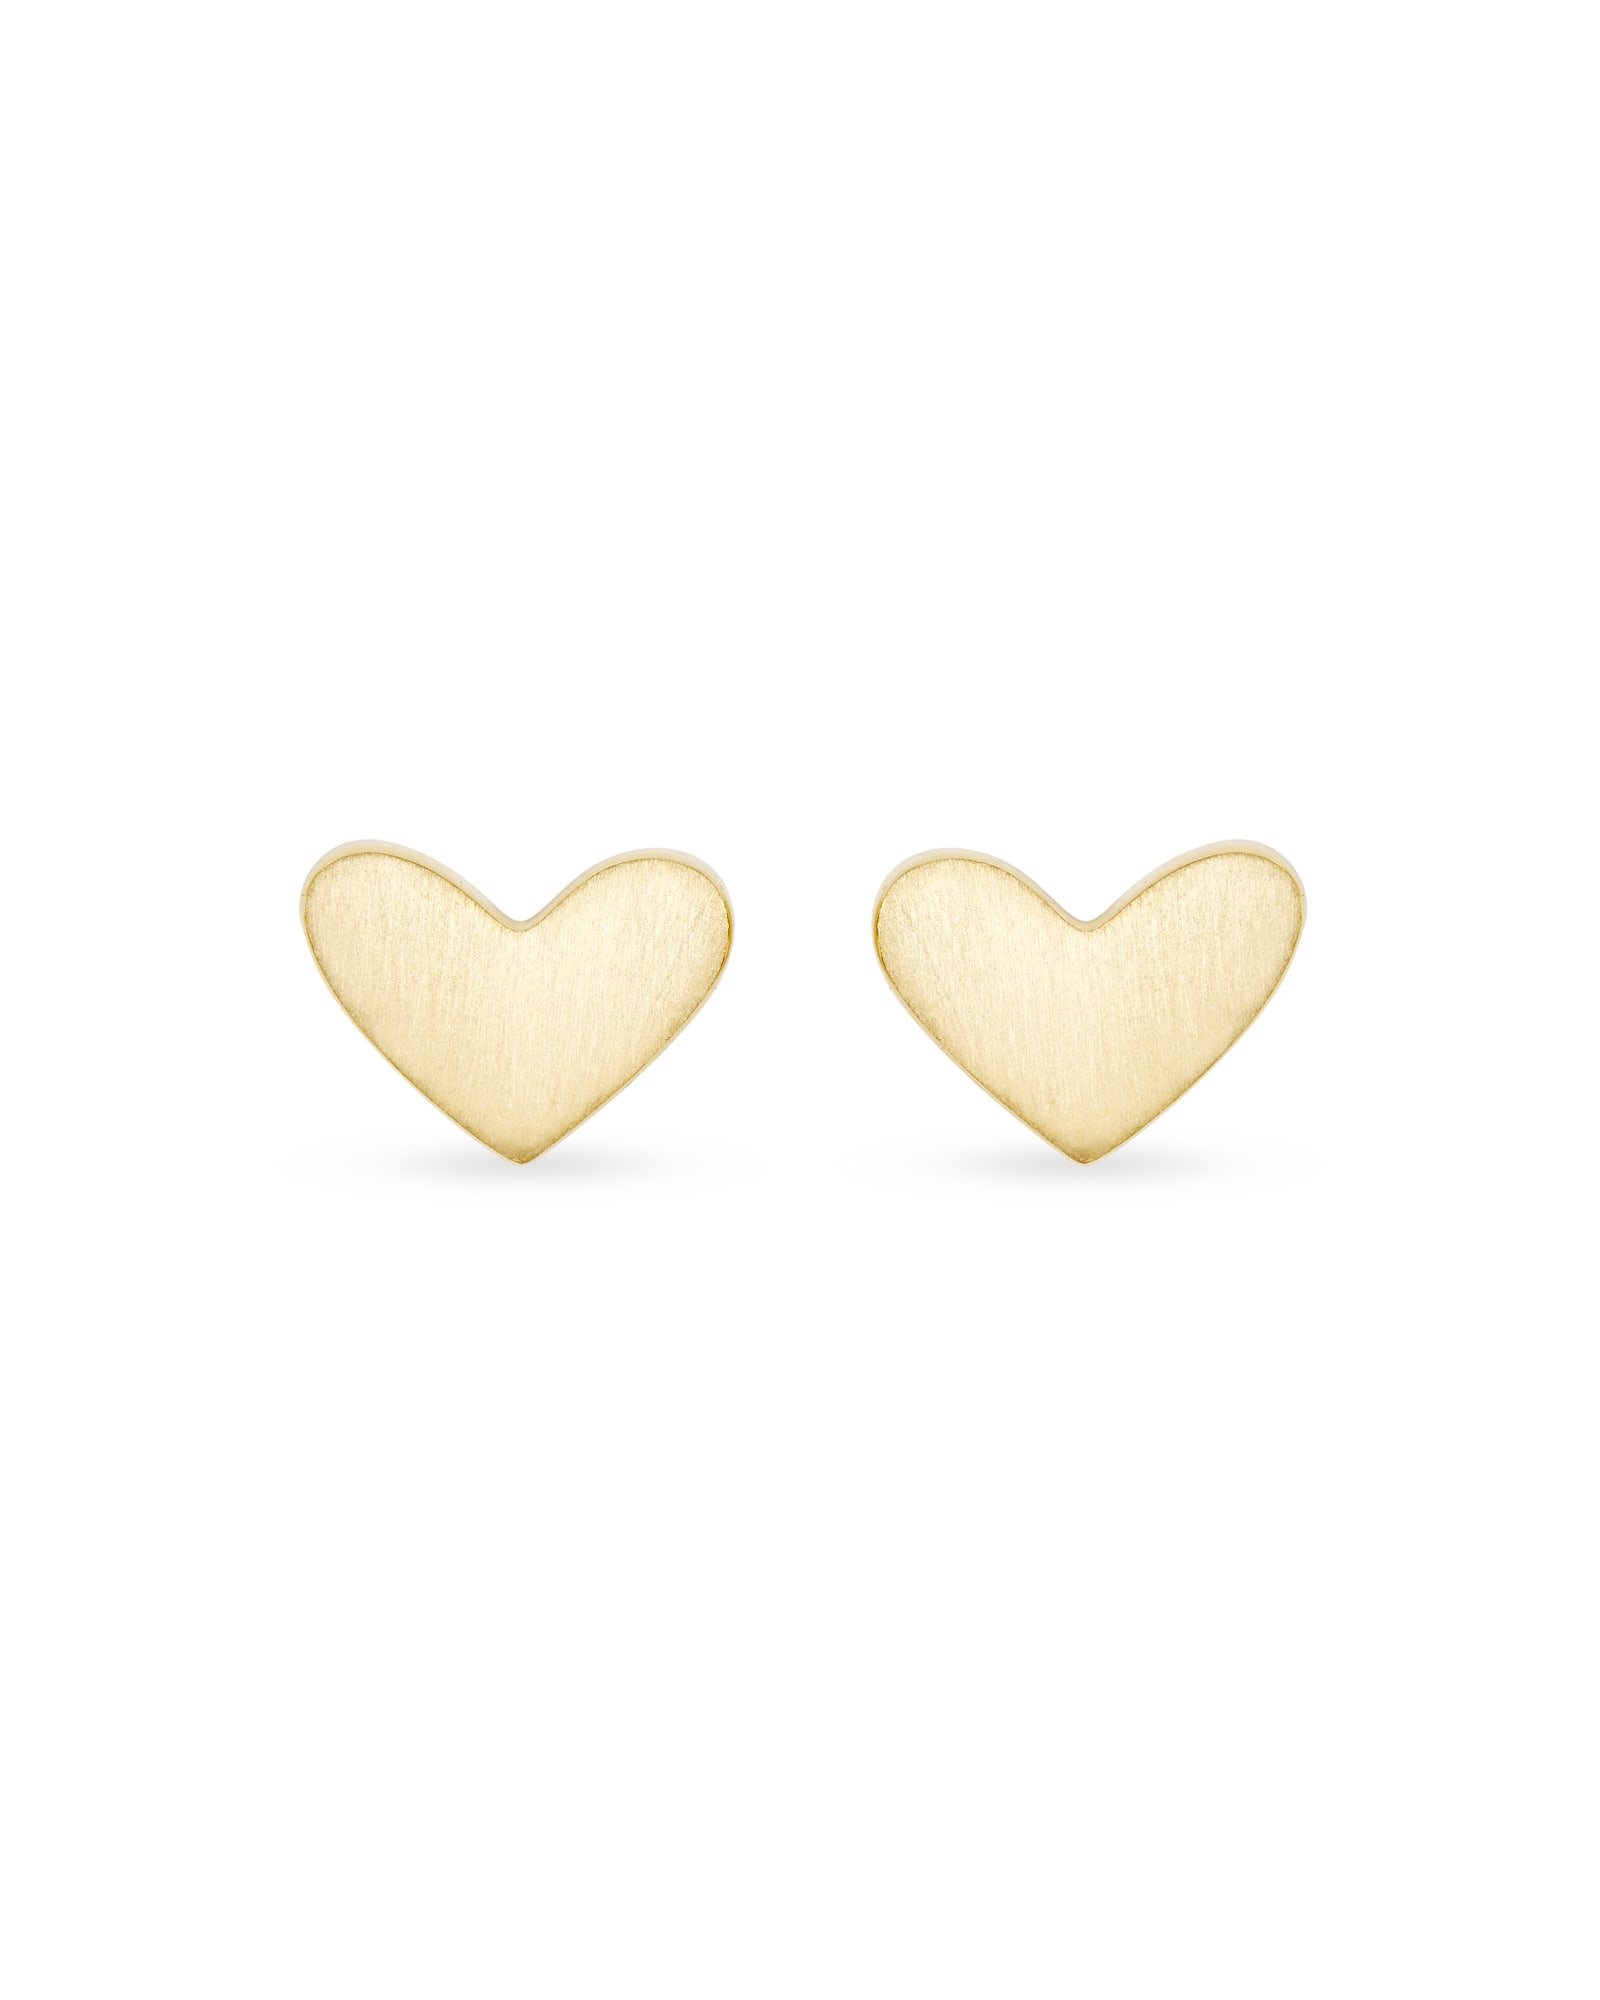 Ari Heart Stud Earrings In 18k Gold Vermeil | Kendra Scott